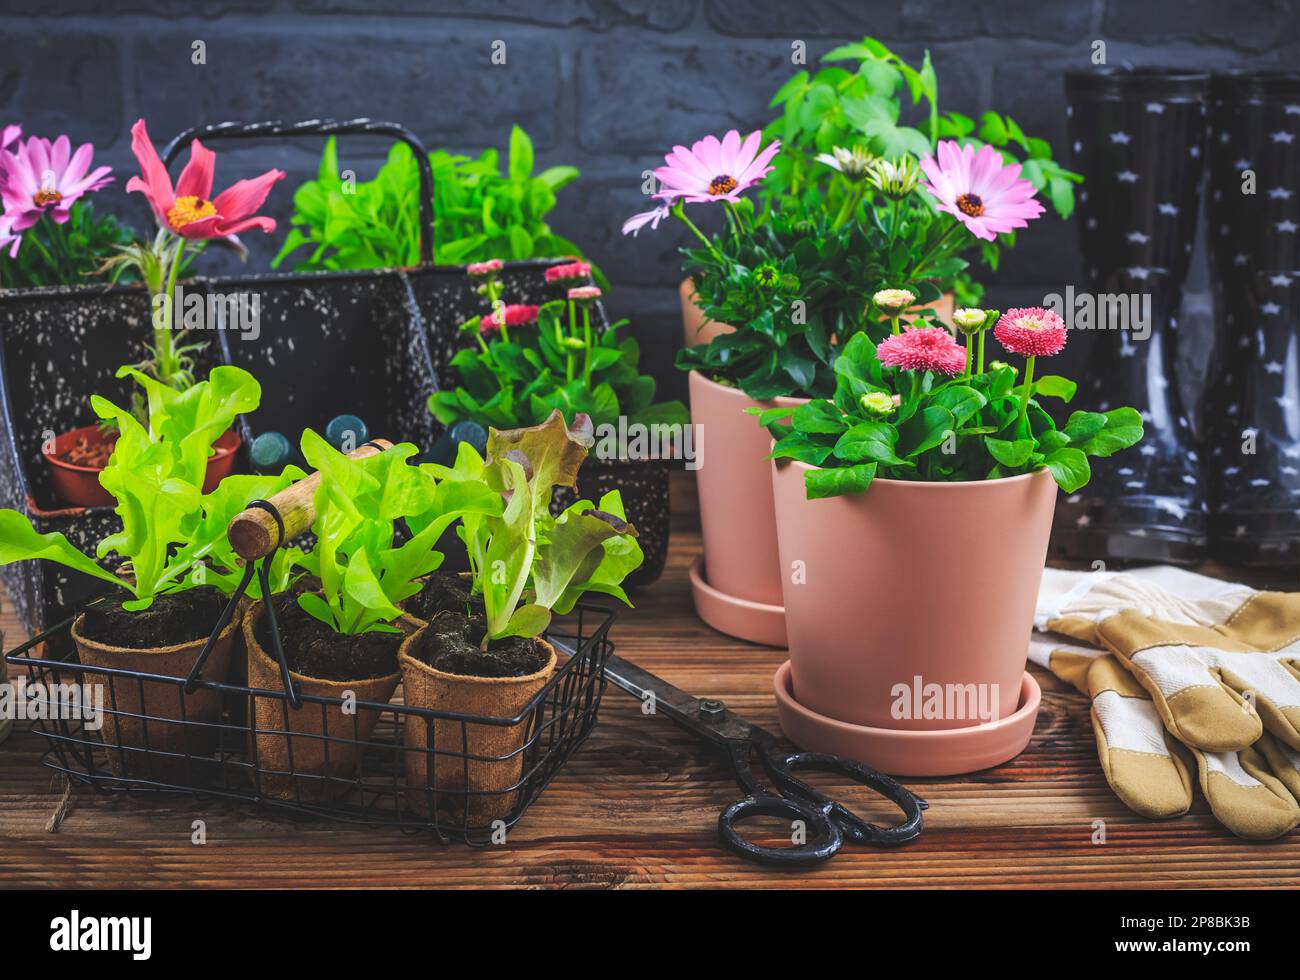 Printemps - concept de placage et de jardinage, plantules, plantes et pots de fleurs Banque D'Images